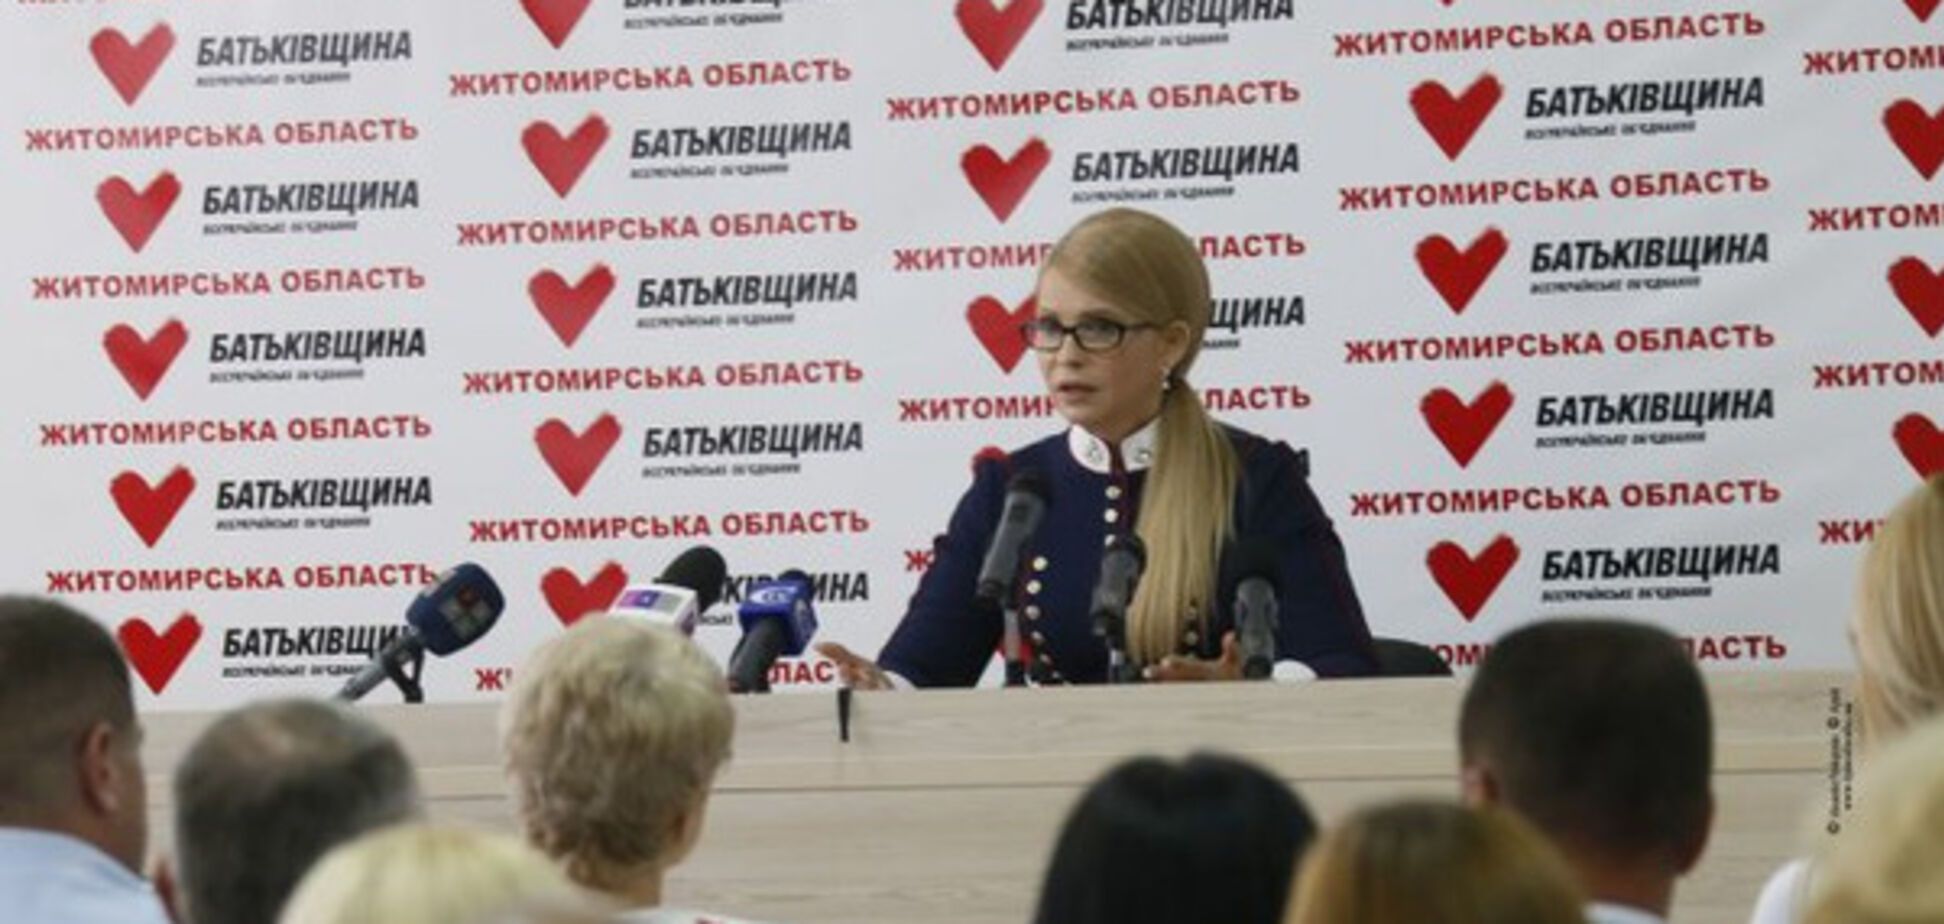 Тимошенко вважає перемогу у Стокгольмському арбітражі заслугою газового контракту 2009 року